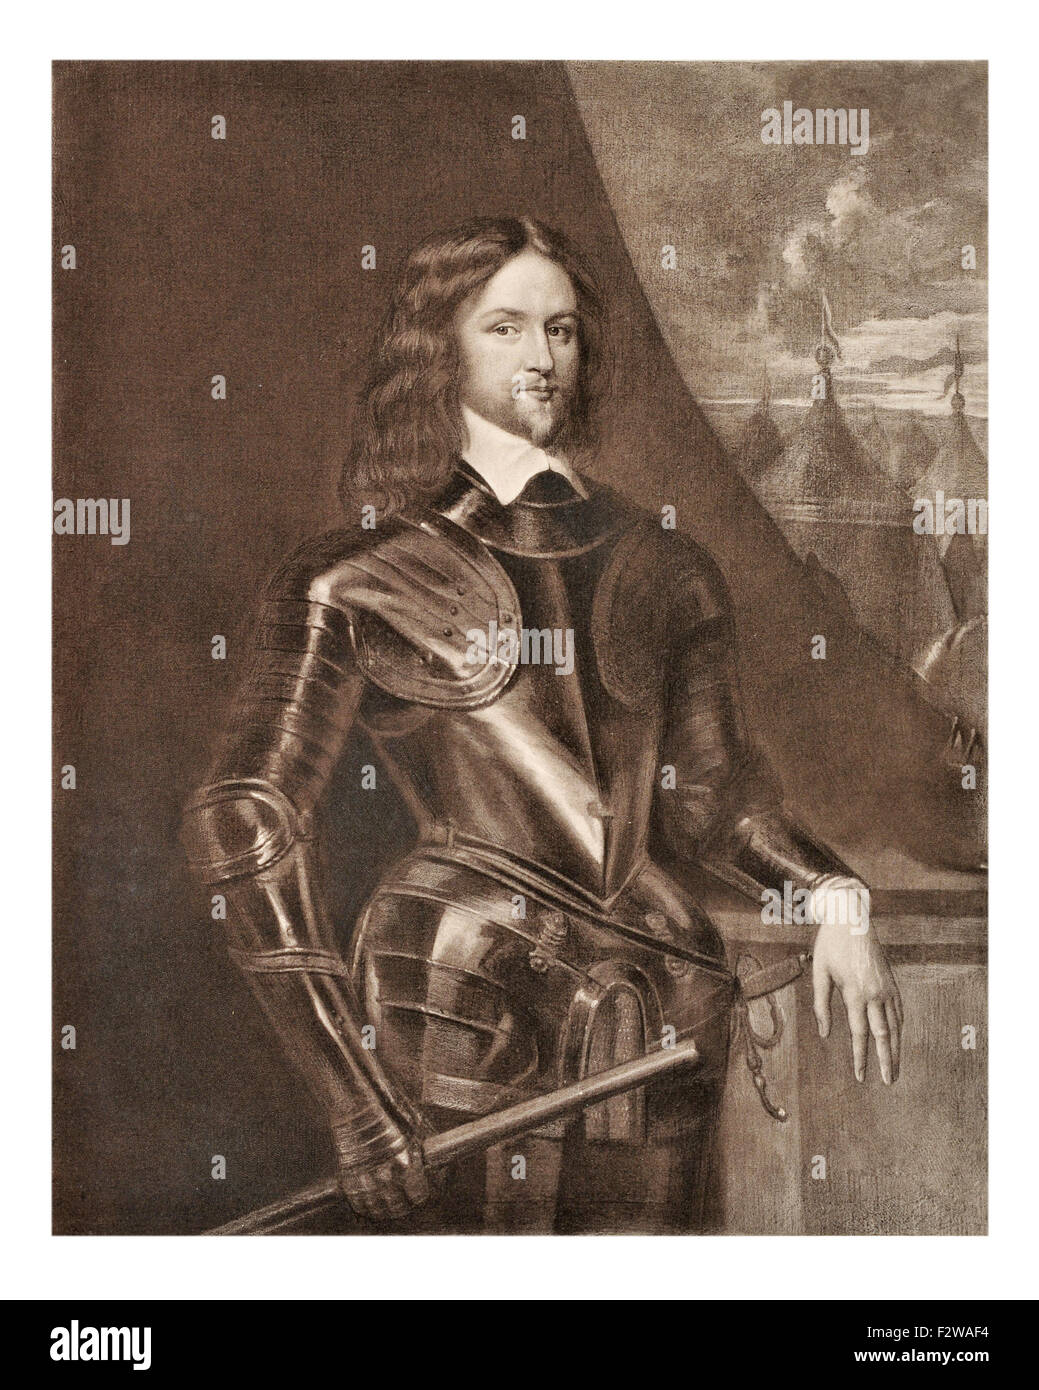 Prince Rupert von Rhein, 1619-1682), deutscher Soldat, Admiral, Wissenschaftler, Sportler, kolonialer Gouverneur amateur Künstler des 17. Jahrhunderts. Cavalier Stockfoto